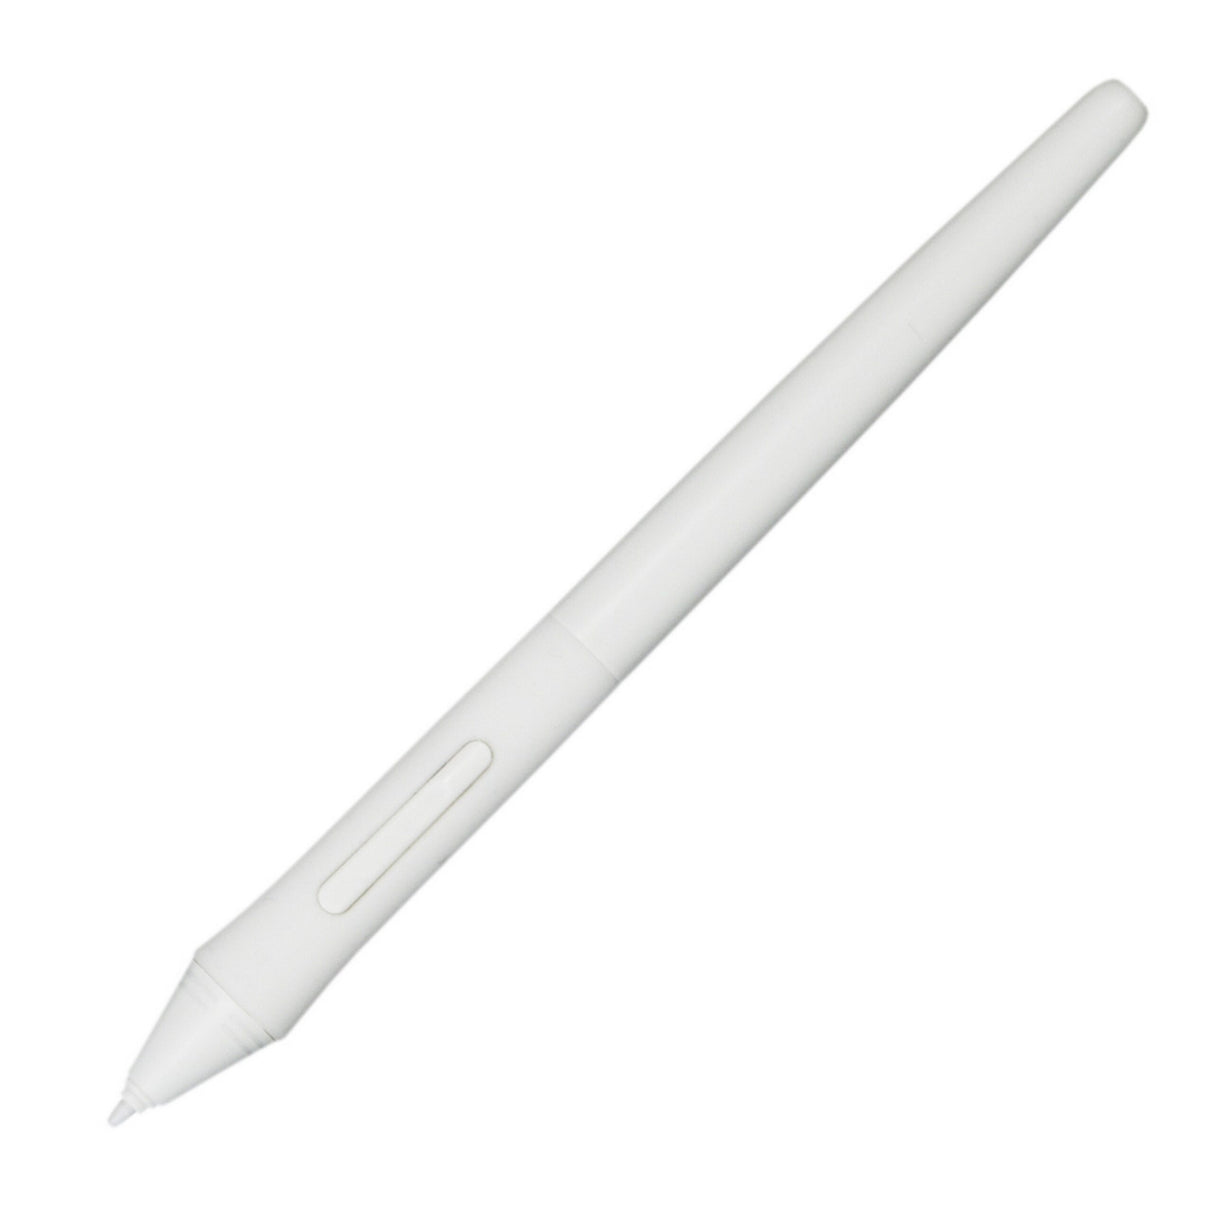 Elmo 5ZA0000519 Replacement Wireless Pen for CRA-2